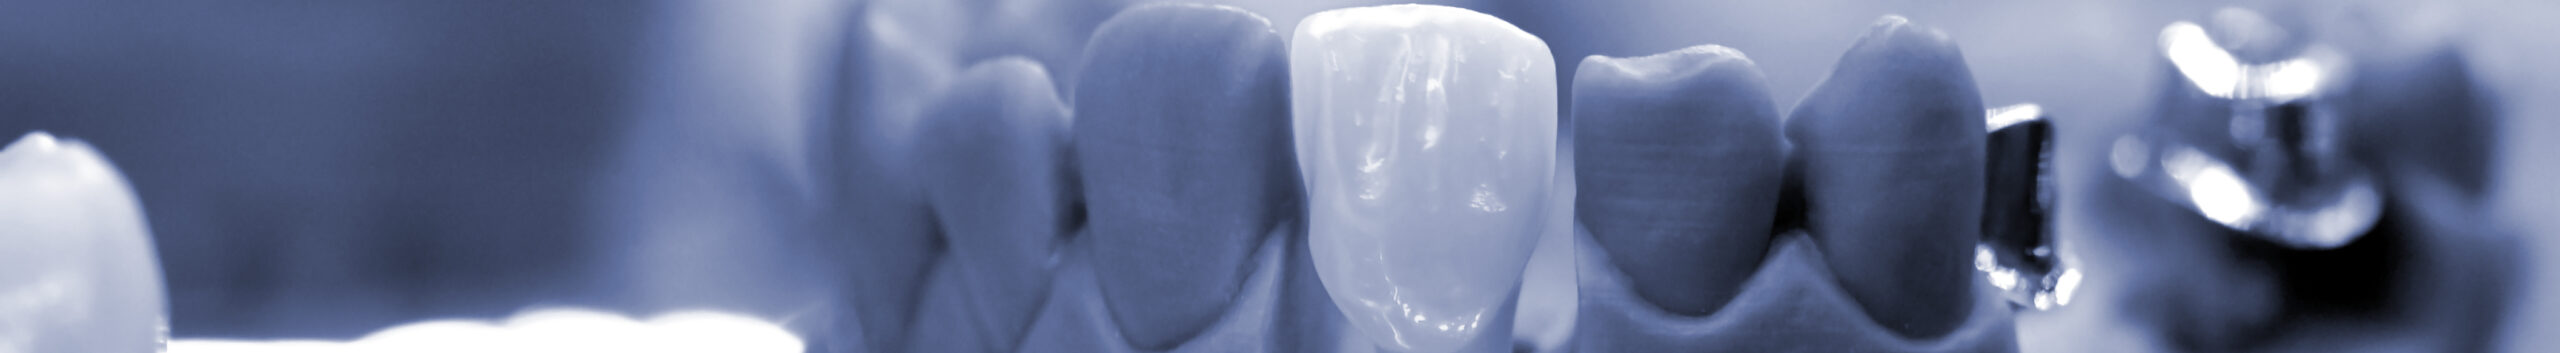 Способы наращивания костной ткани зуба